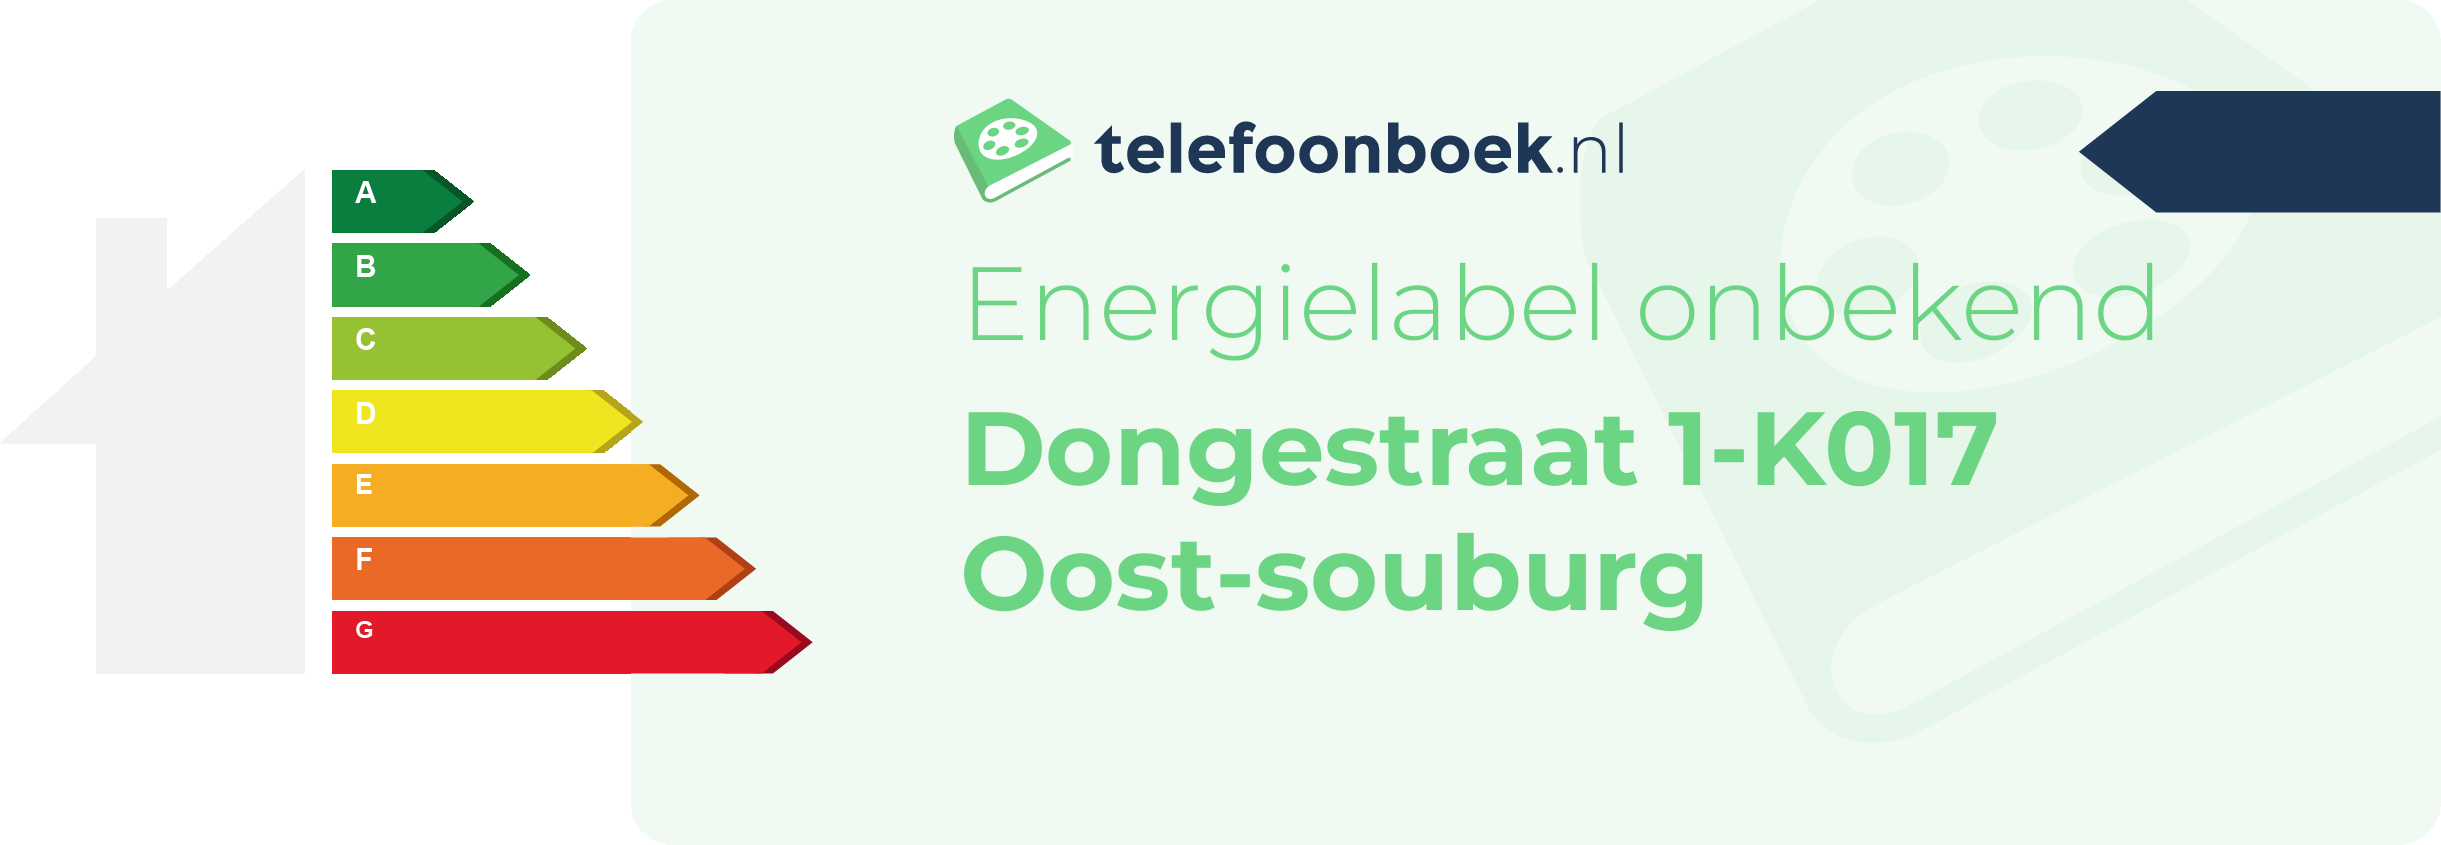 Energielabel Dongestraat 1-K017 Oost-Souburg